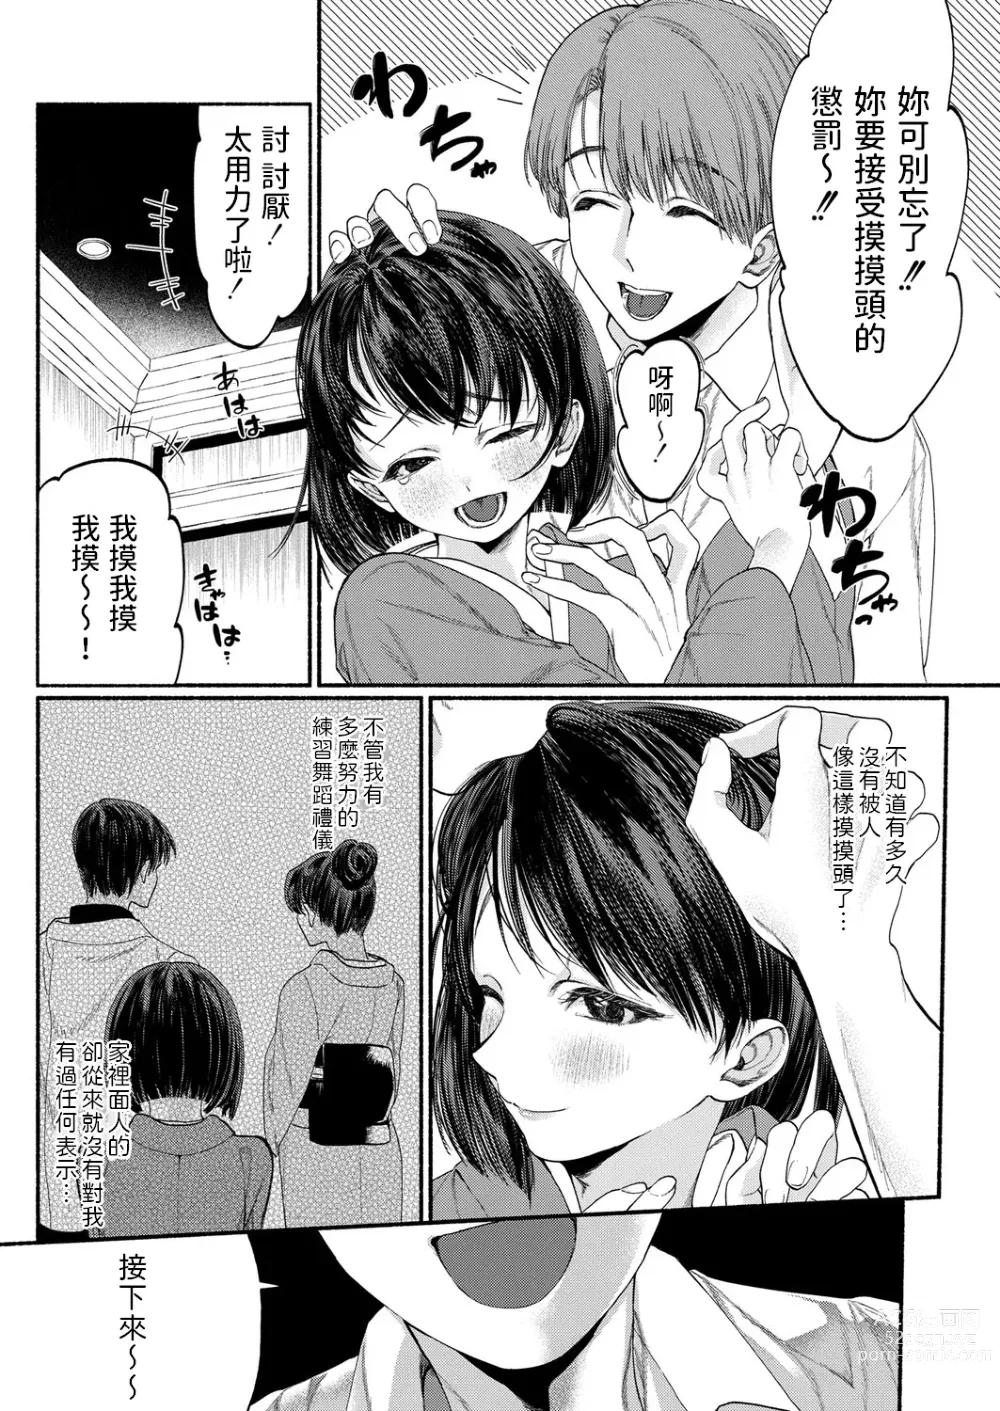 Page 9 of manga Hakoiri Musume wa Pet ni Ochiru -Zenpen-